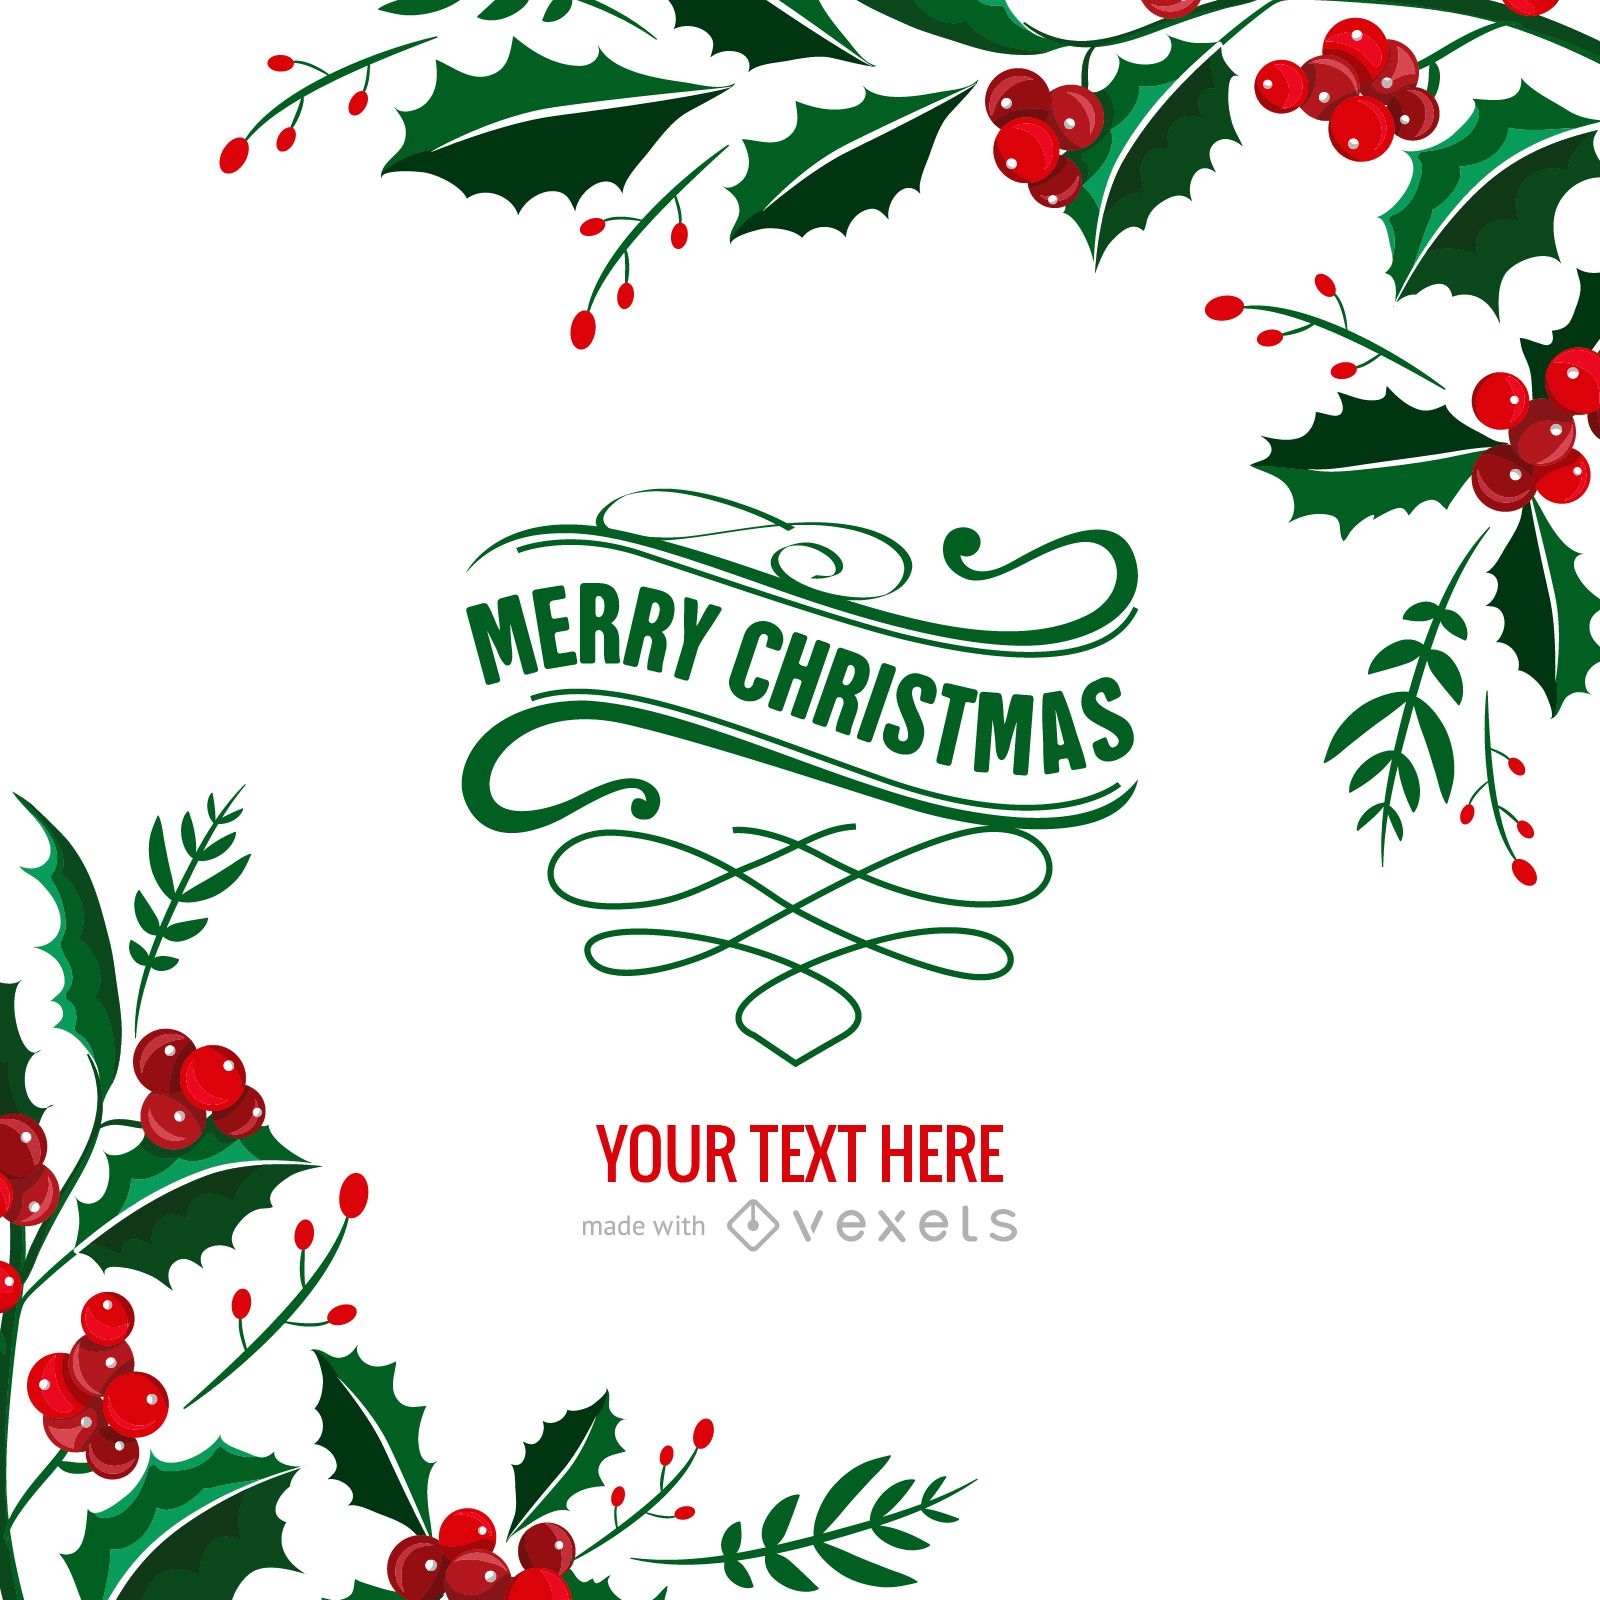 Merry Christmas Editable Cards Free Printable